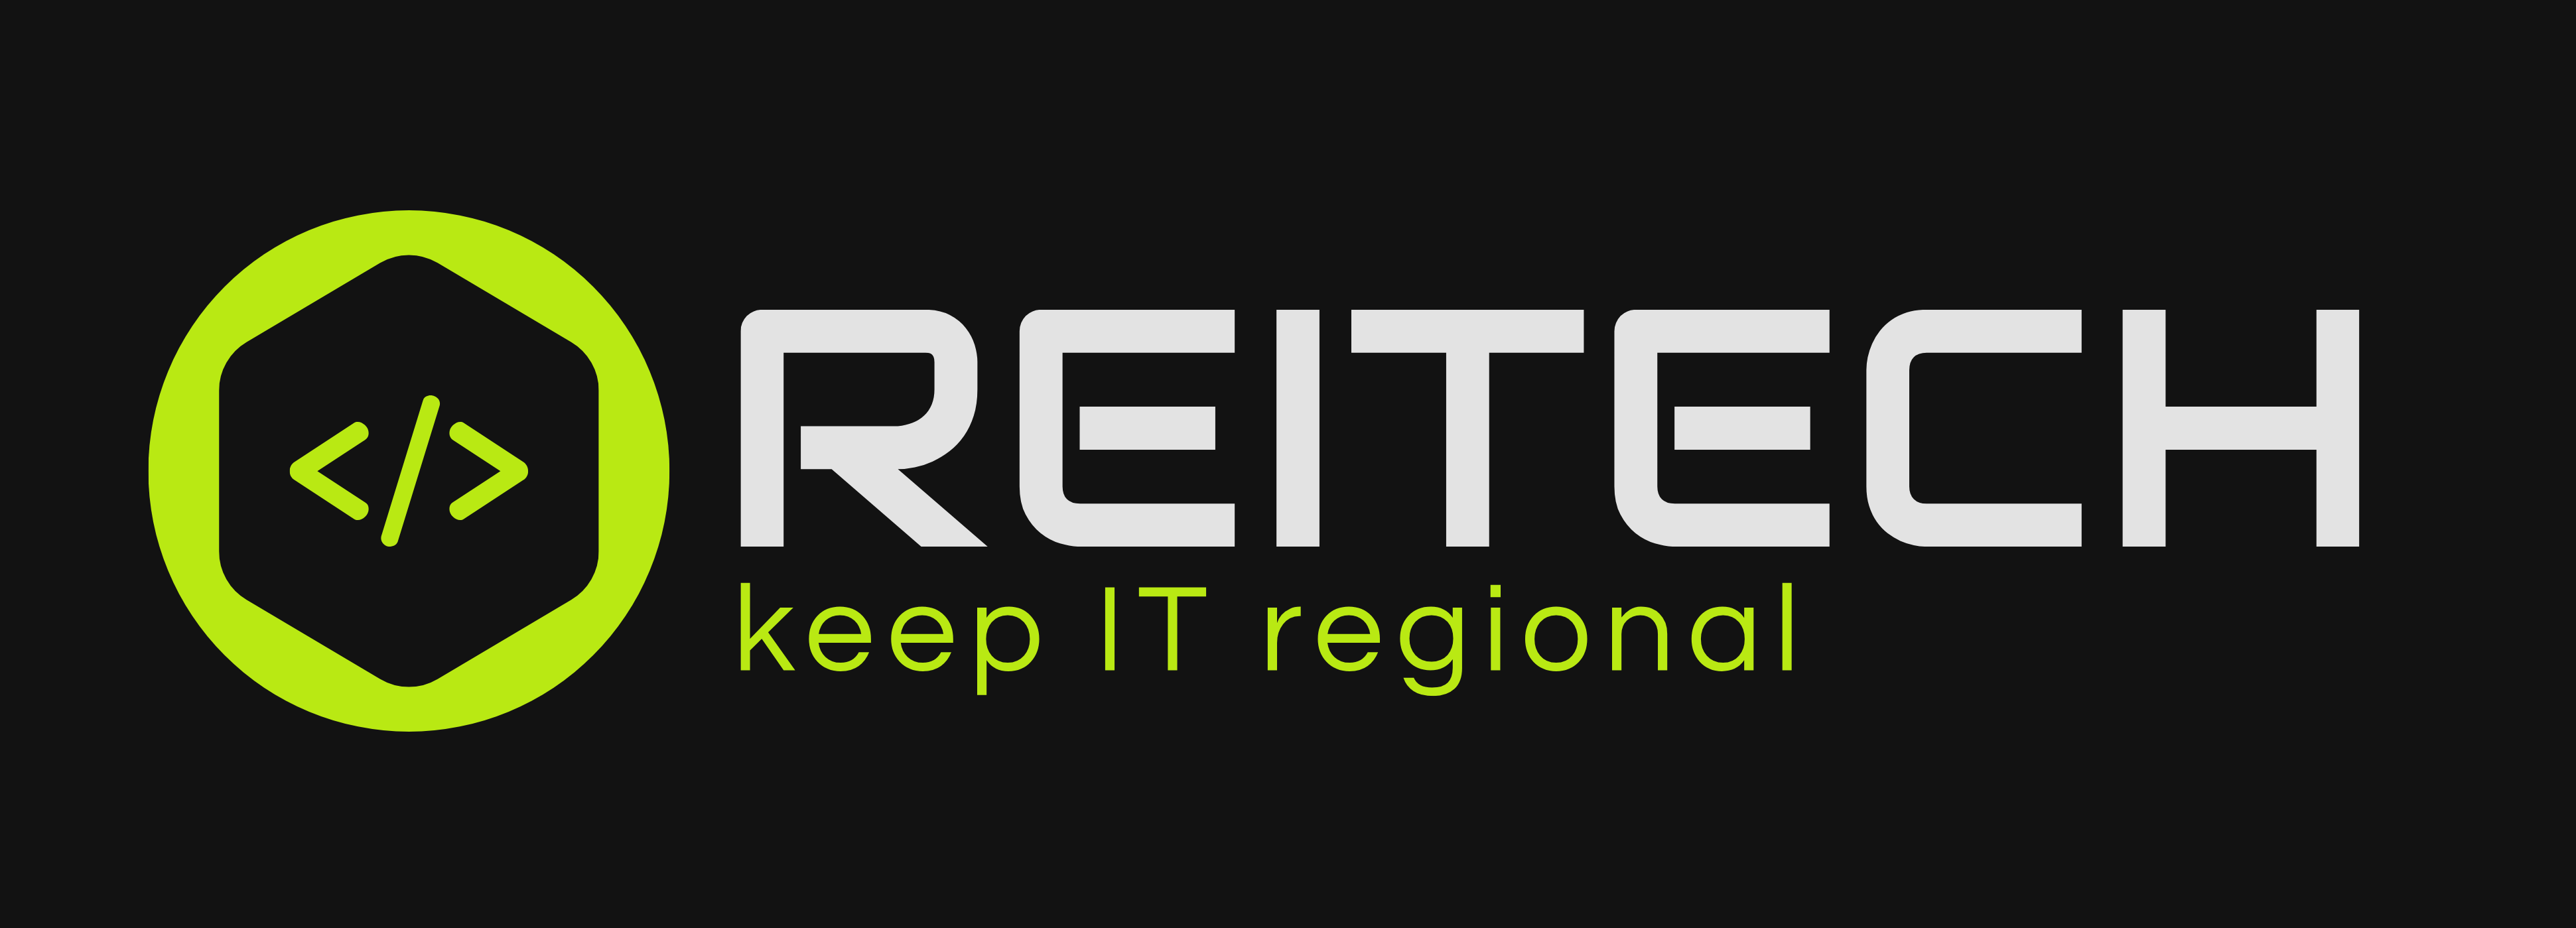 Schriftzug und Logo von reitech IT Services auf schwarzem Hintergrund